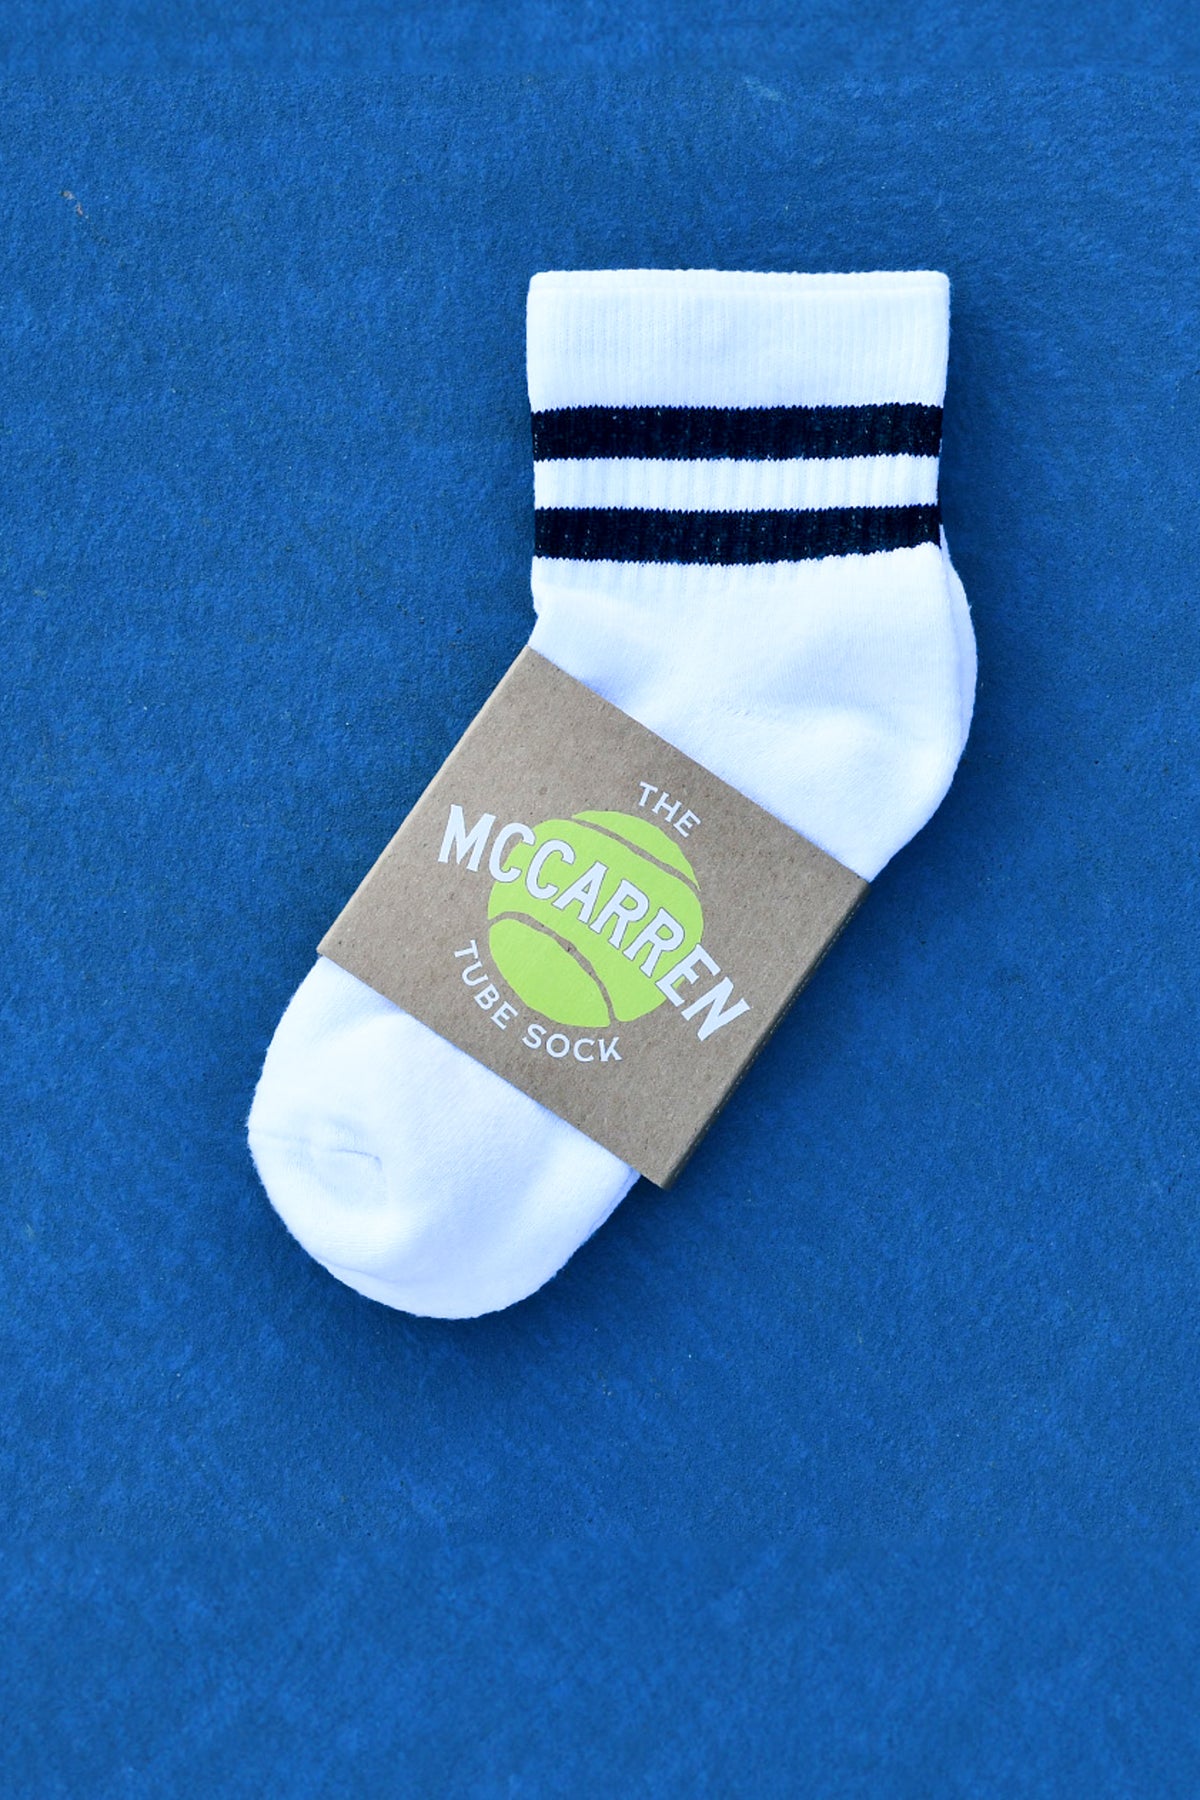 The McCarren Tube Sock - QTR - Multi 3-Pack